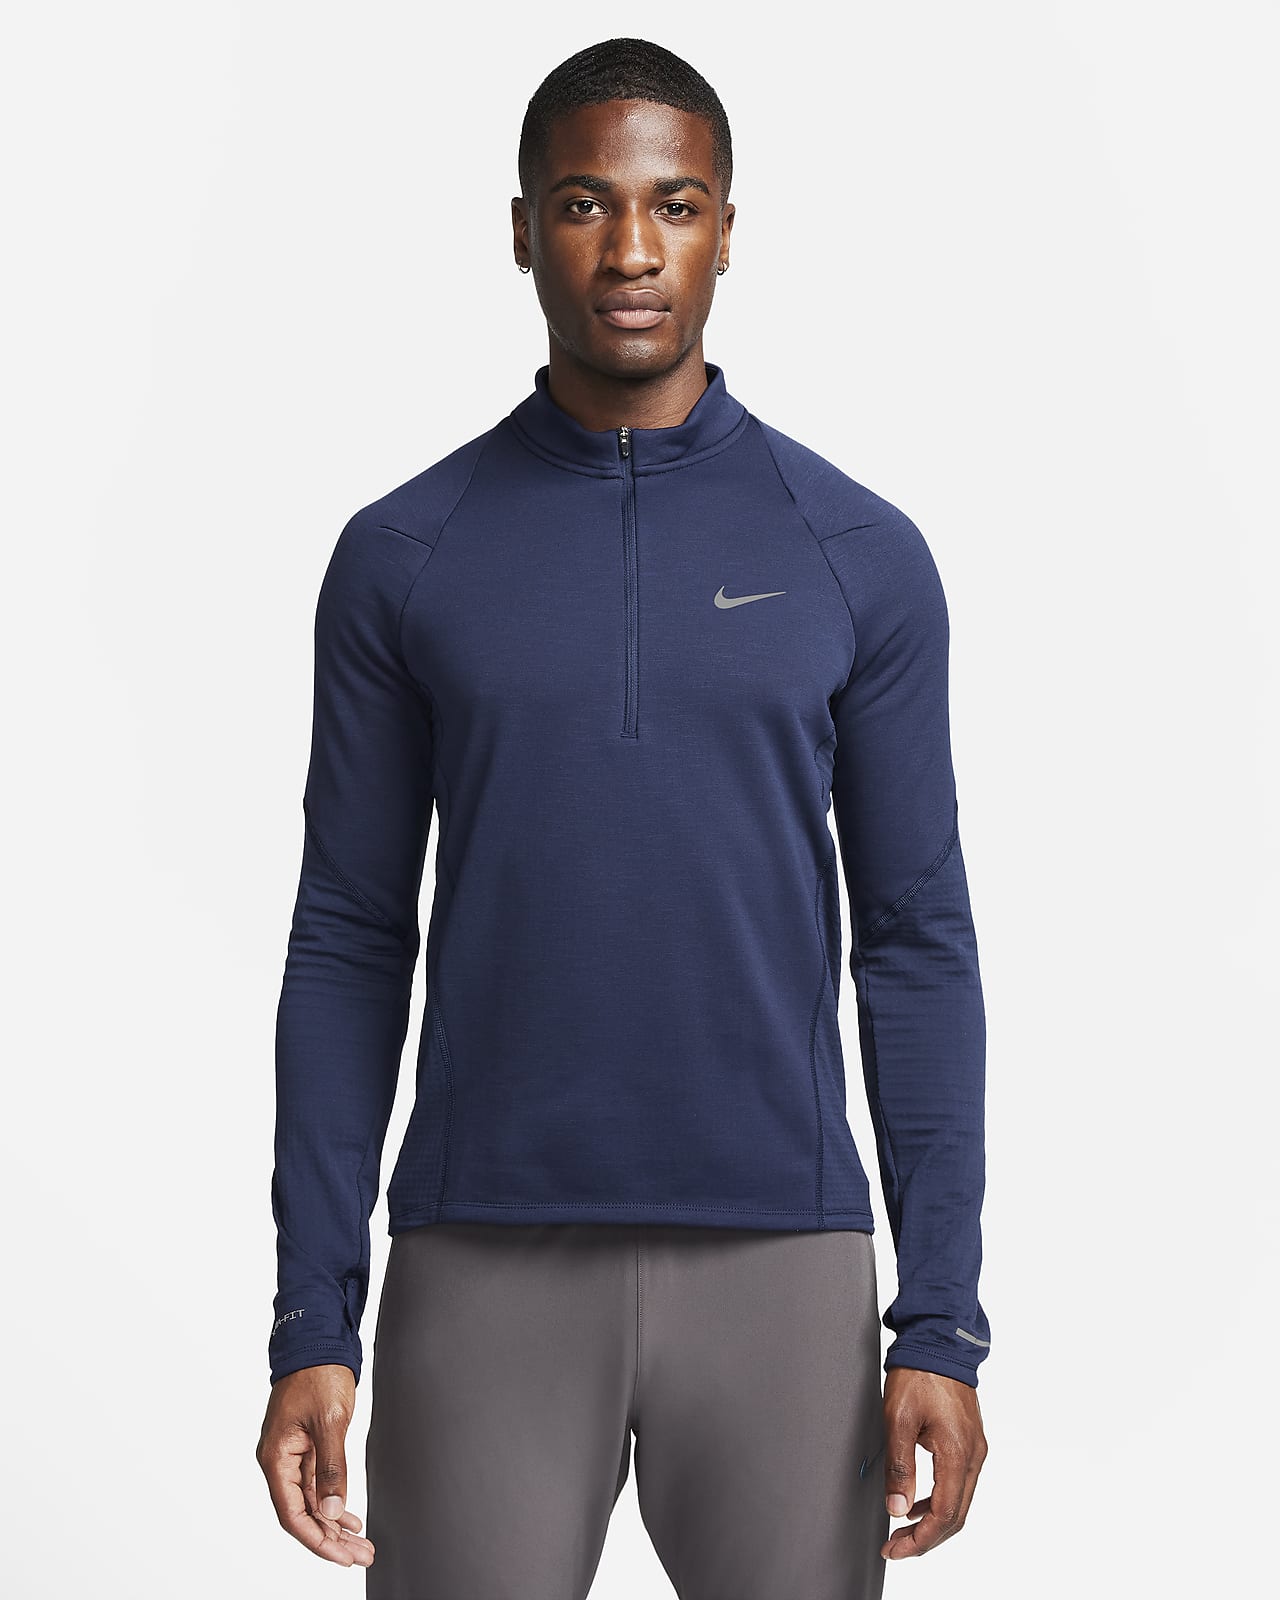 Nike Yoga Dri-FIT Men's Full-Zip Jacket. Nike CA